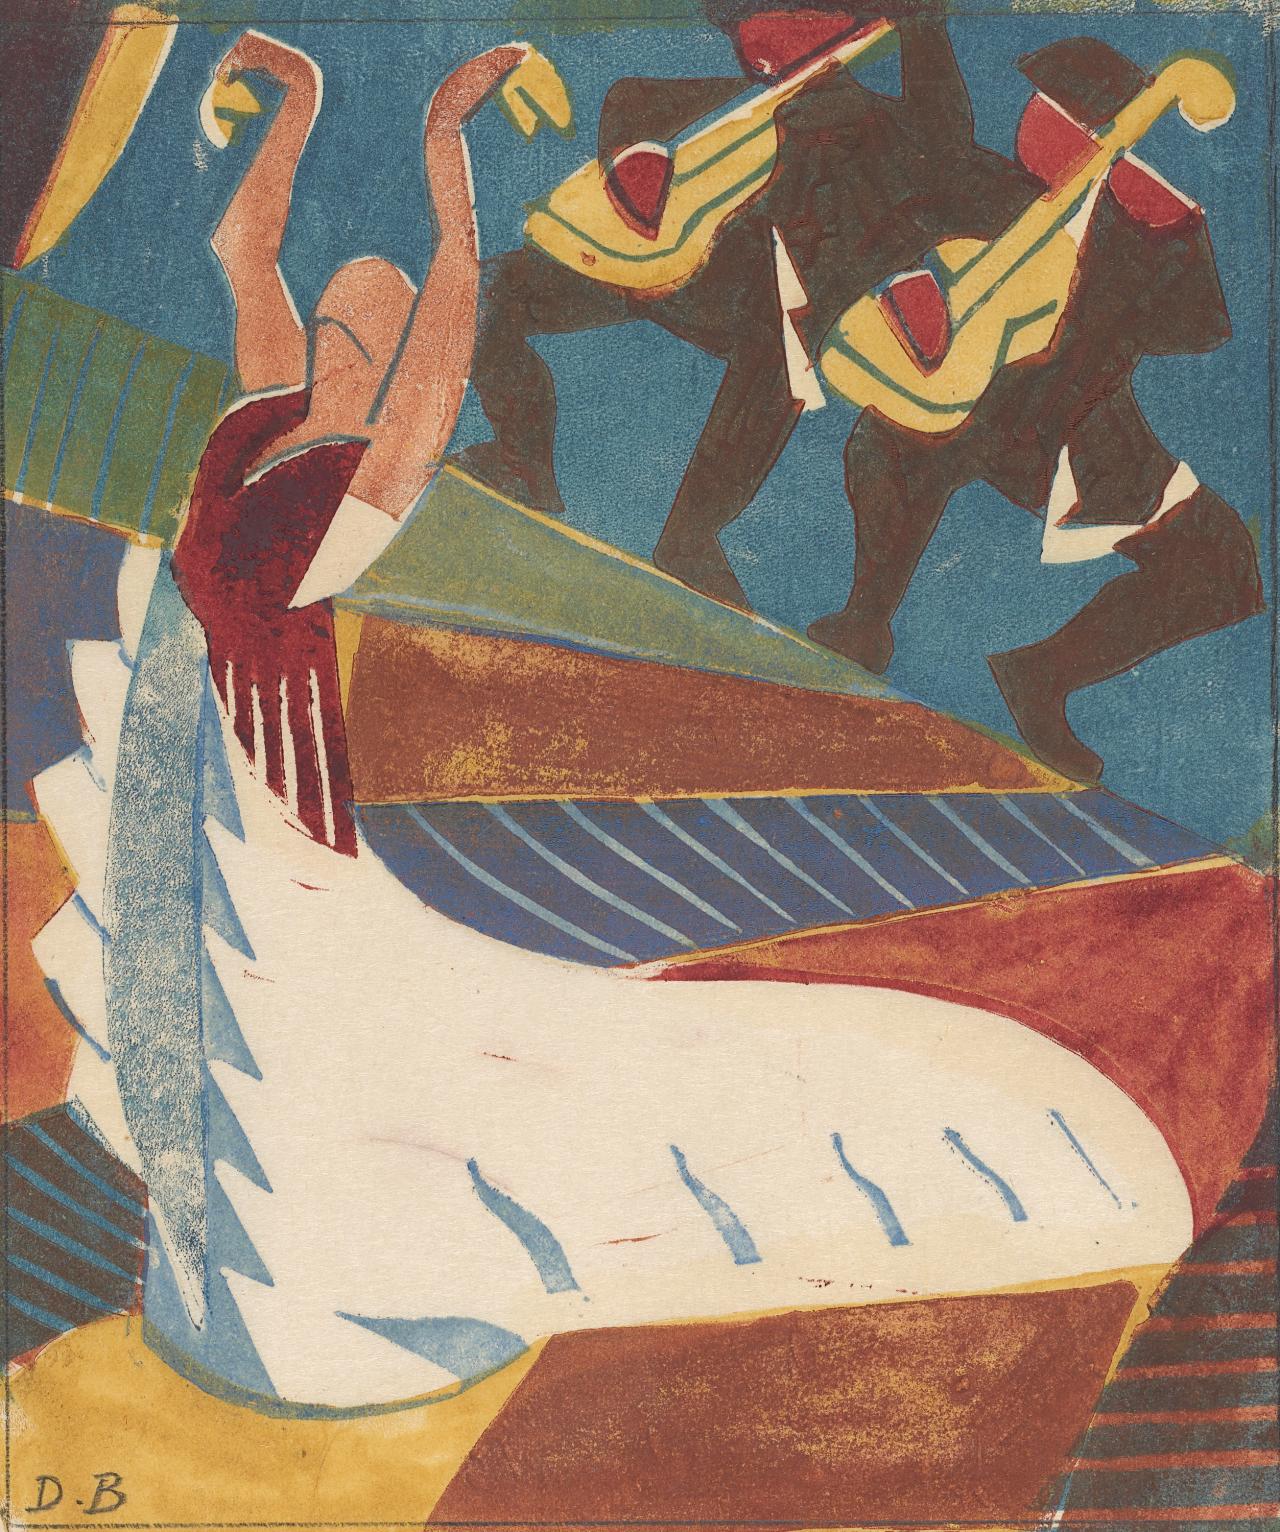 Argentina (De Spaanse danseres) by Dorrit Black - ca. 1929 - 18,8 x 16 cm 